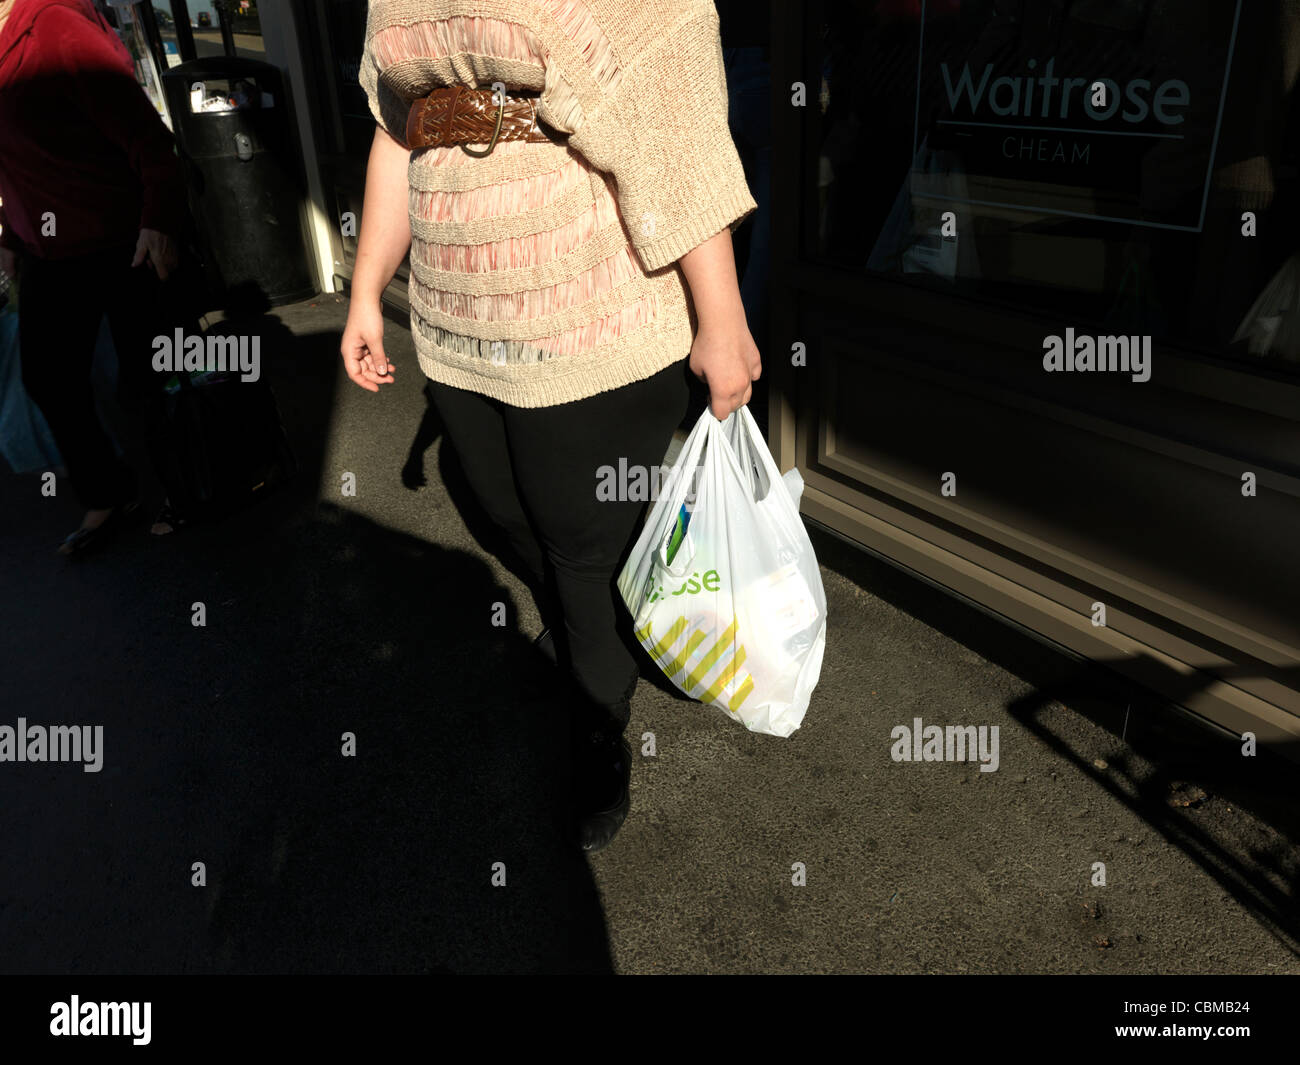 Donna venuta fuori del supermarket Waitrose che trasportano derrate alimentari in materiale plastico riciclabile Shopping Bag Cheam Village Inghilterra Foto Stock